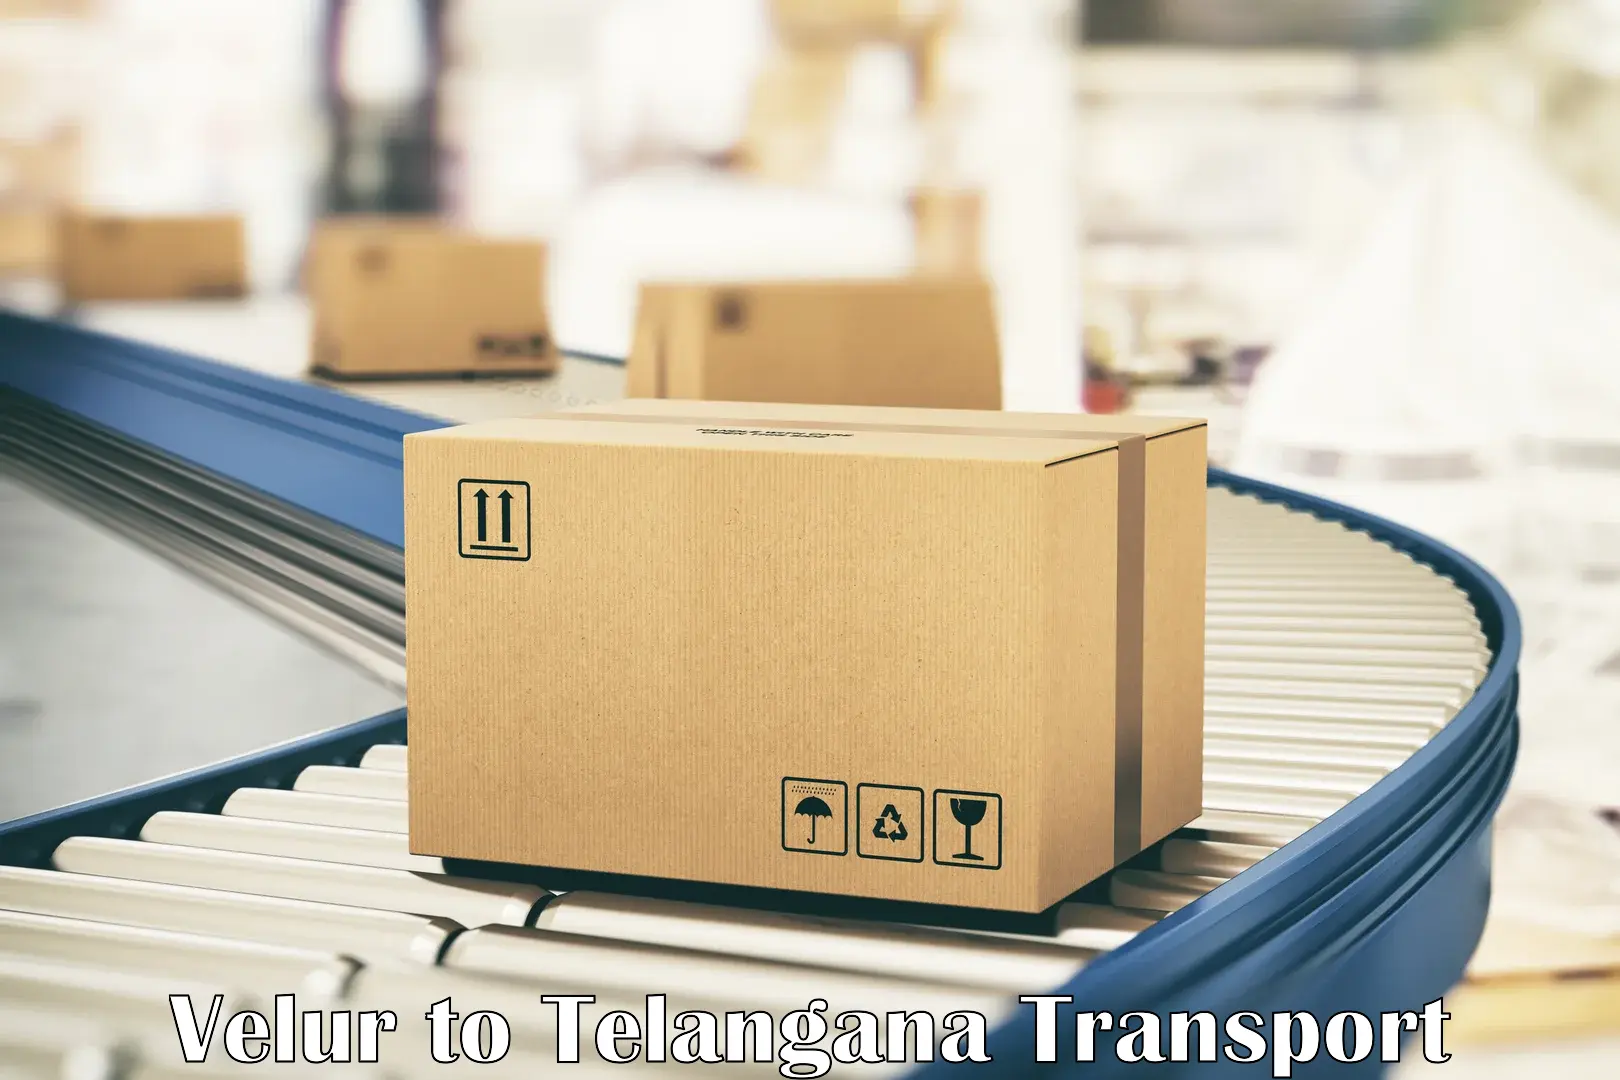 Container transport service Velur to Bhuvanagiri